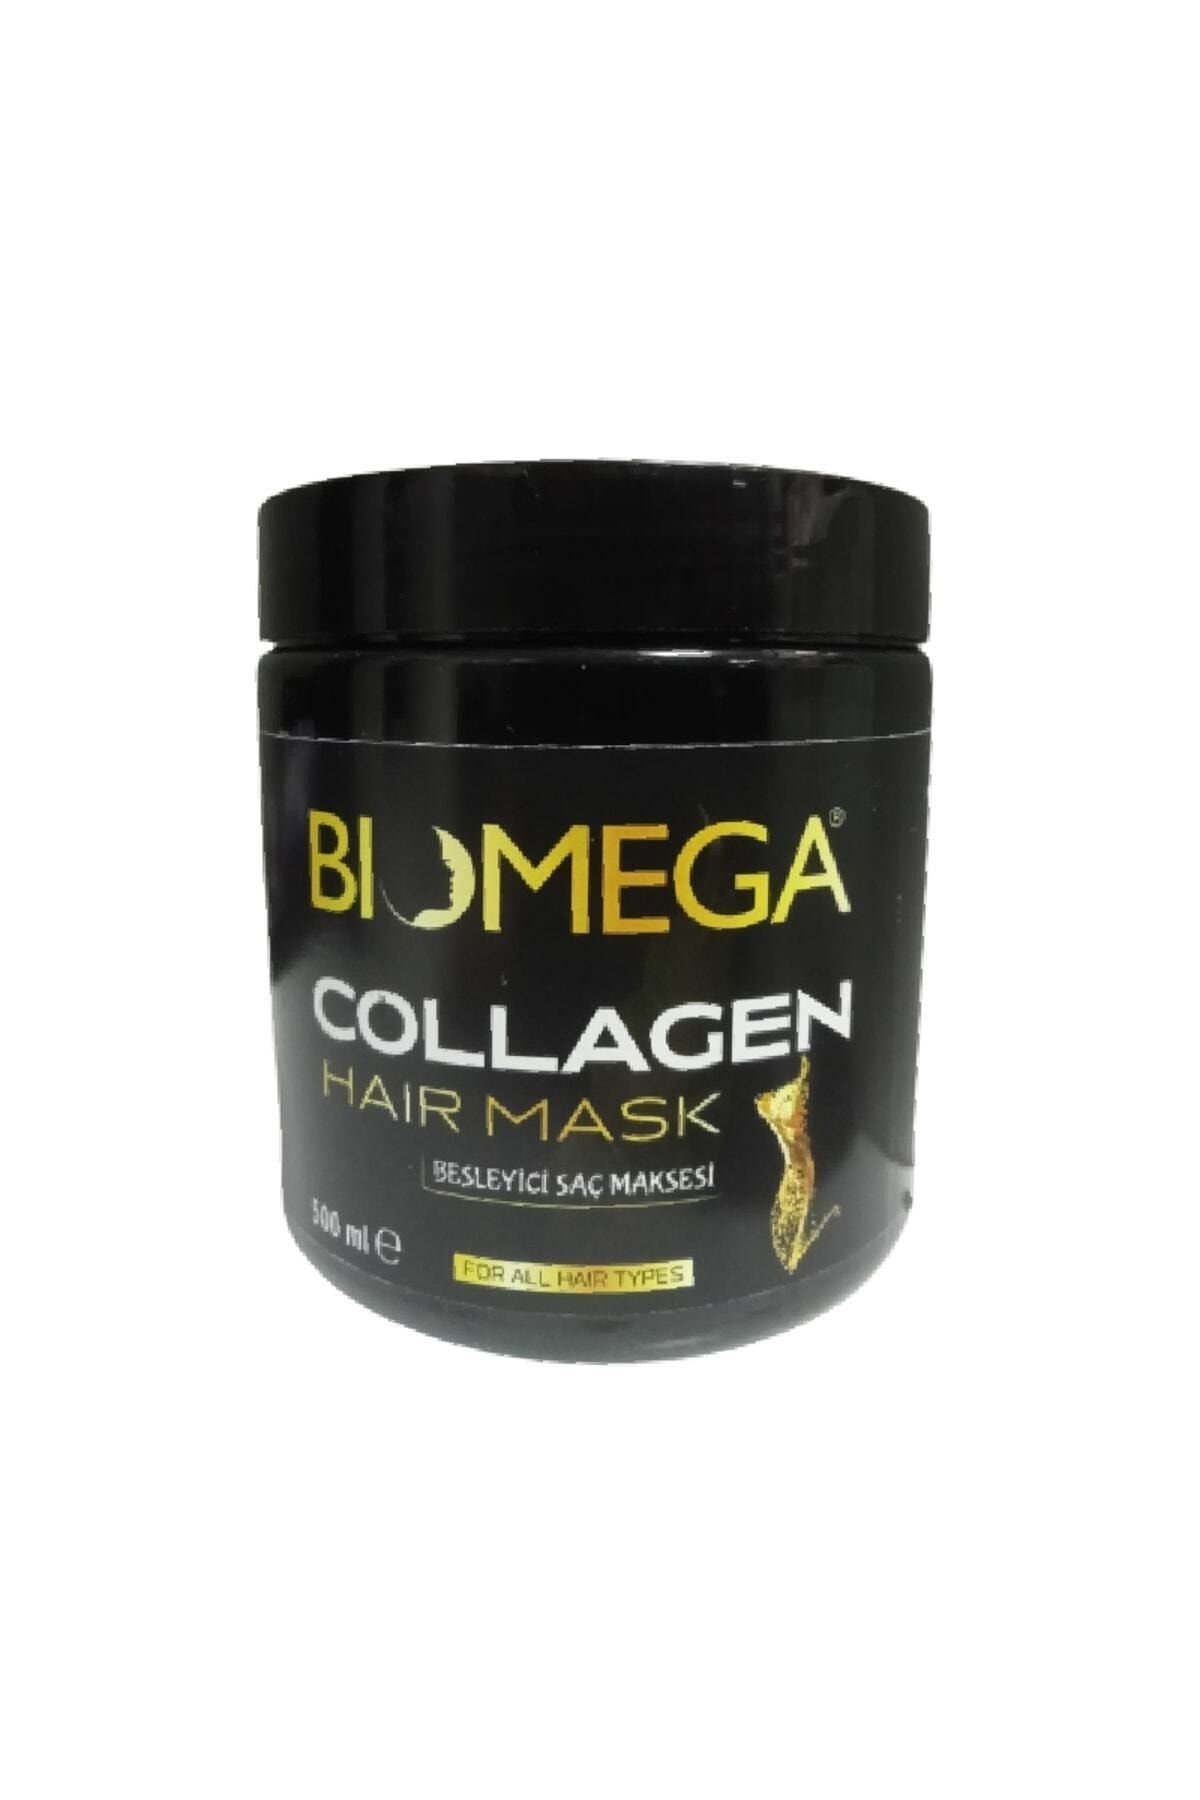 BIOMEGA Collagen Hair Mask Besleyici Saç Maskesi 500 Ml